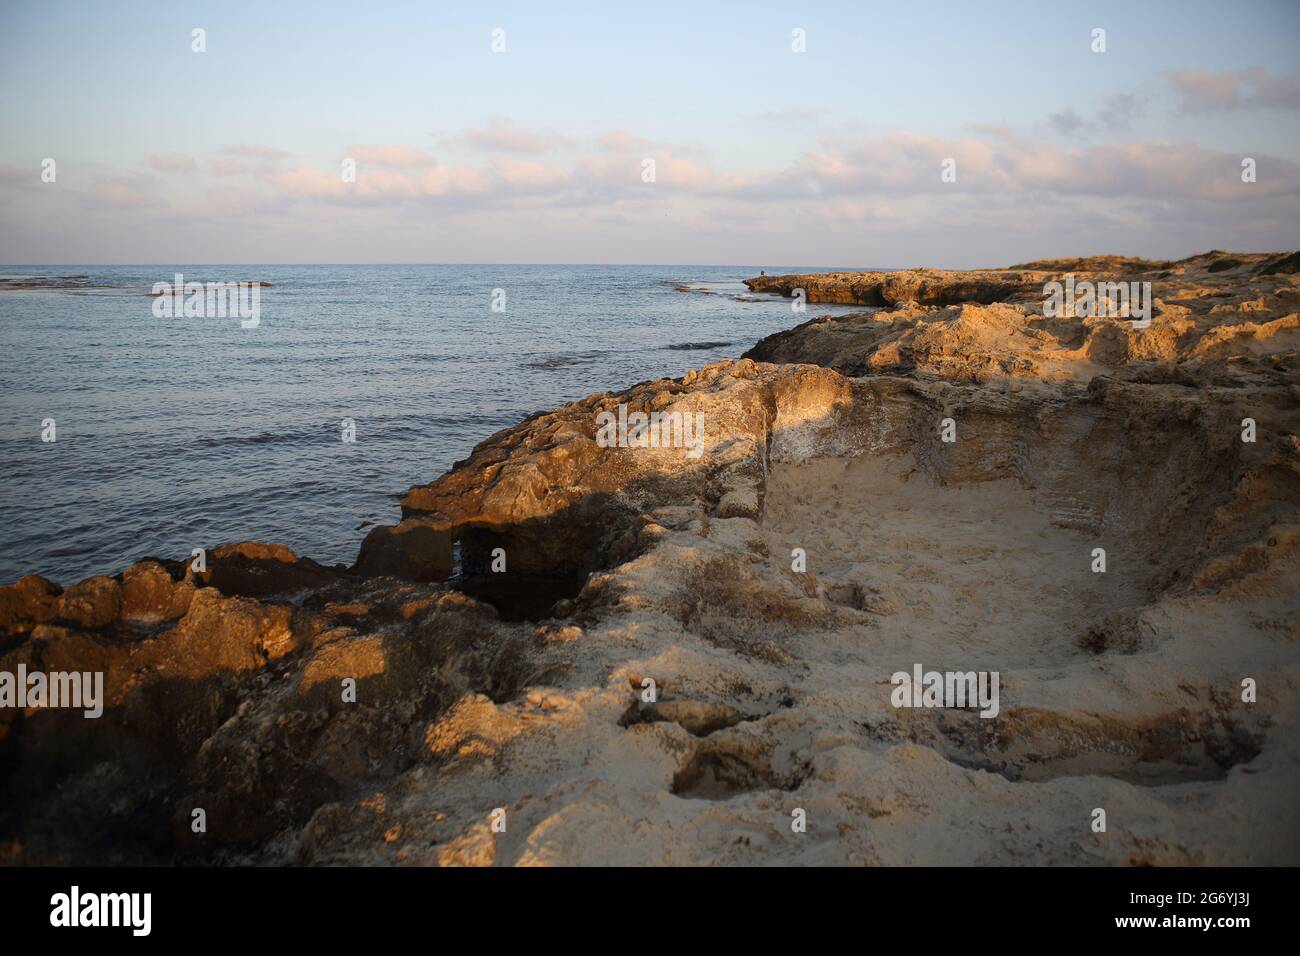 Ufer des Mittelmeers bei Sonnenaufgang, Sandsteinfelsen, Wellen oder Wellenschlag, Reflexionen und Wolken am dramatischen Himmel über dem Mittelmeer. Stockfoto